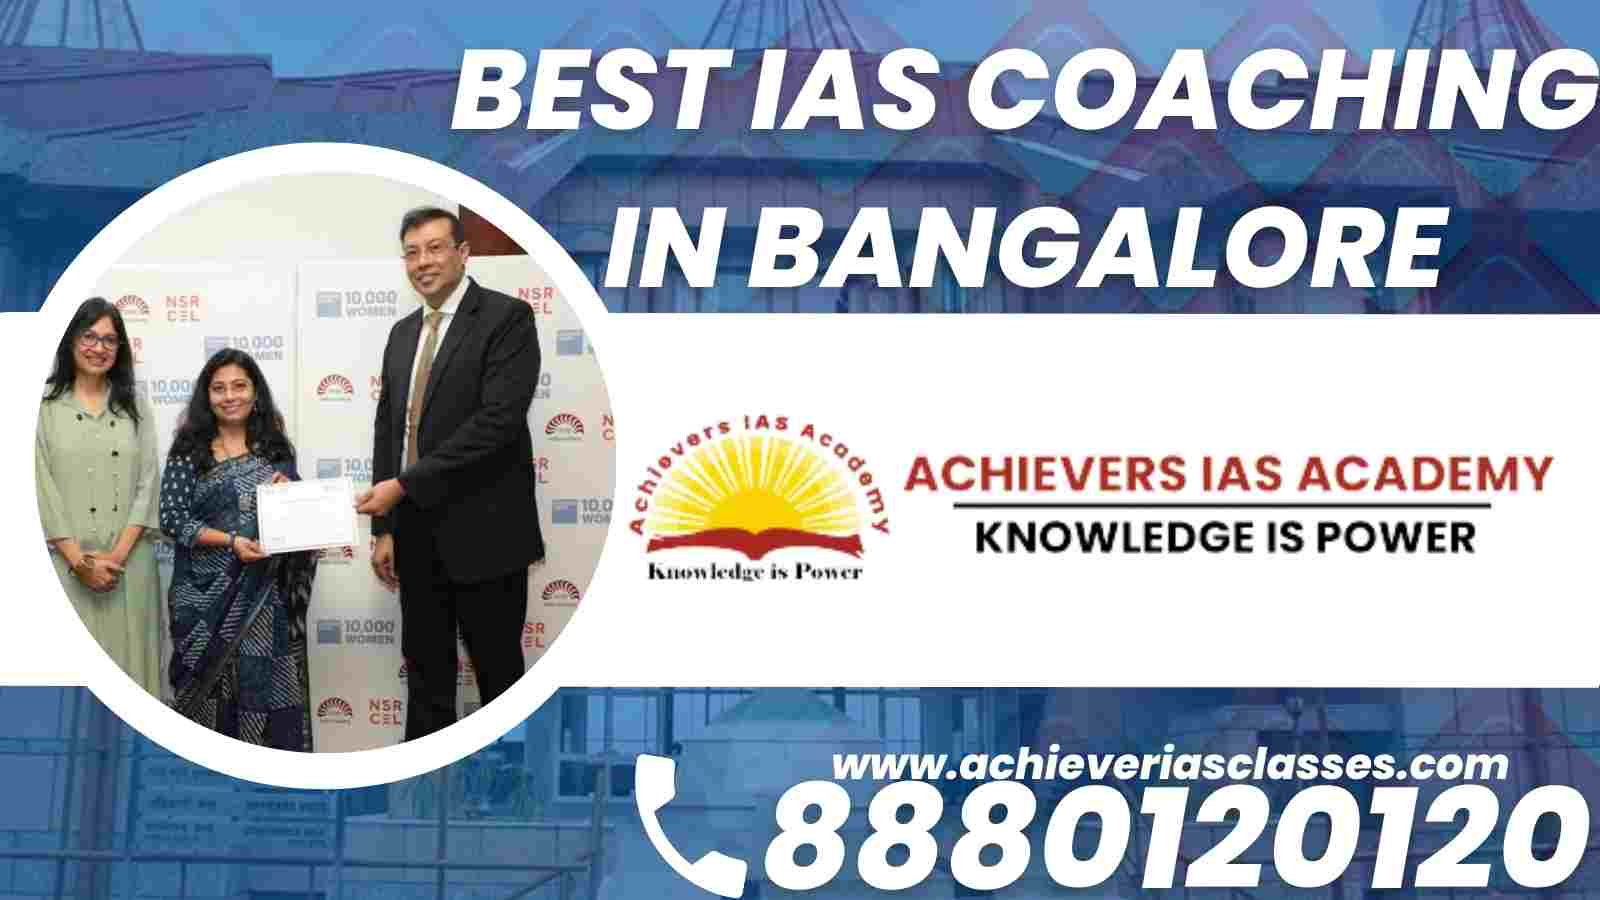 Best IAS Coaching Institute In Bangalore Achievers IAS